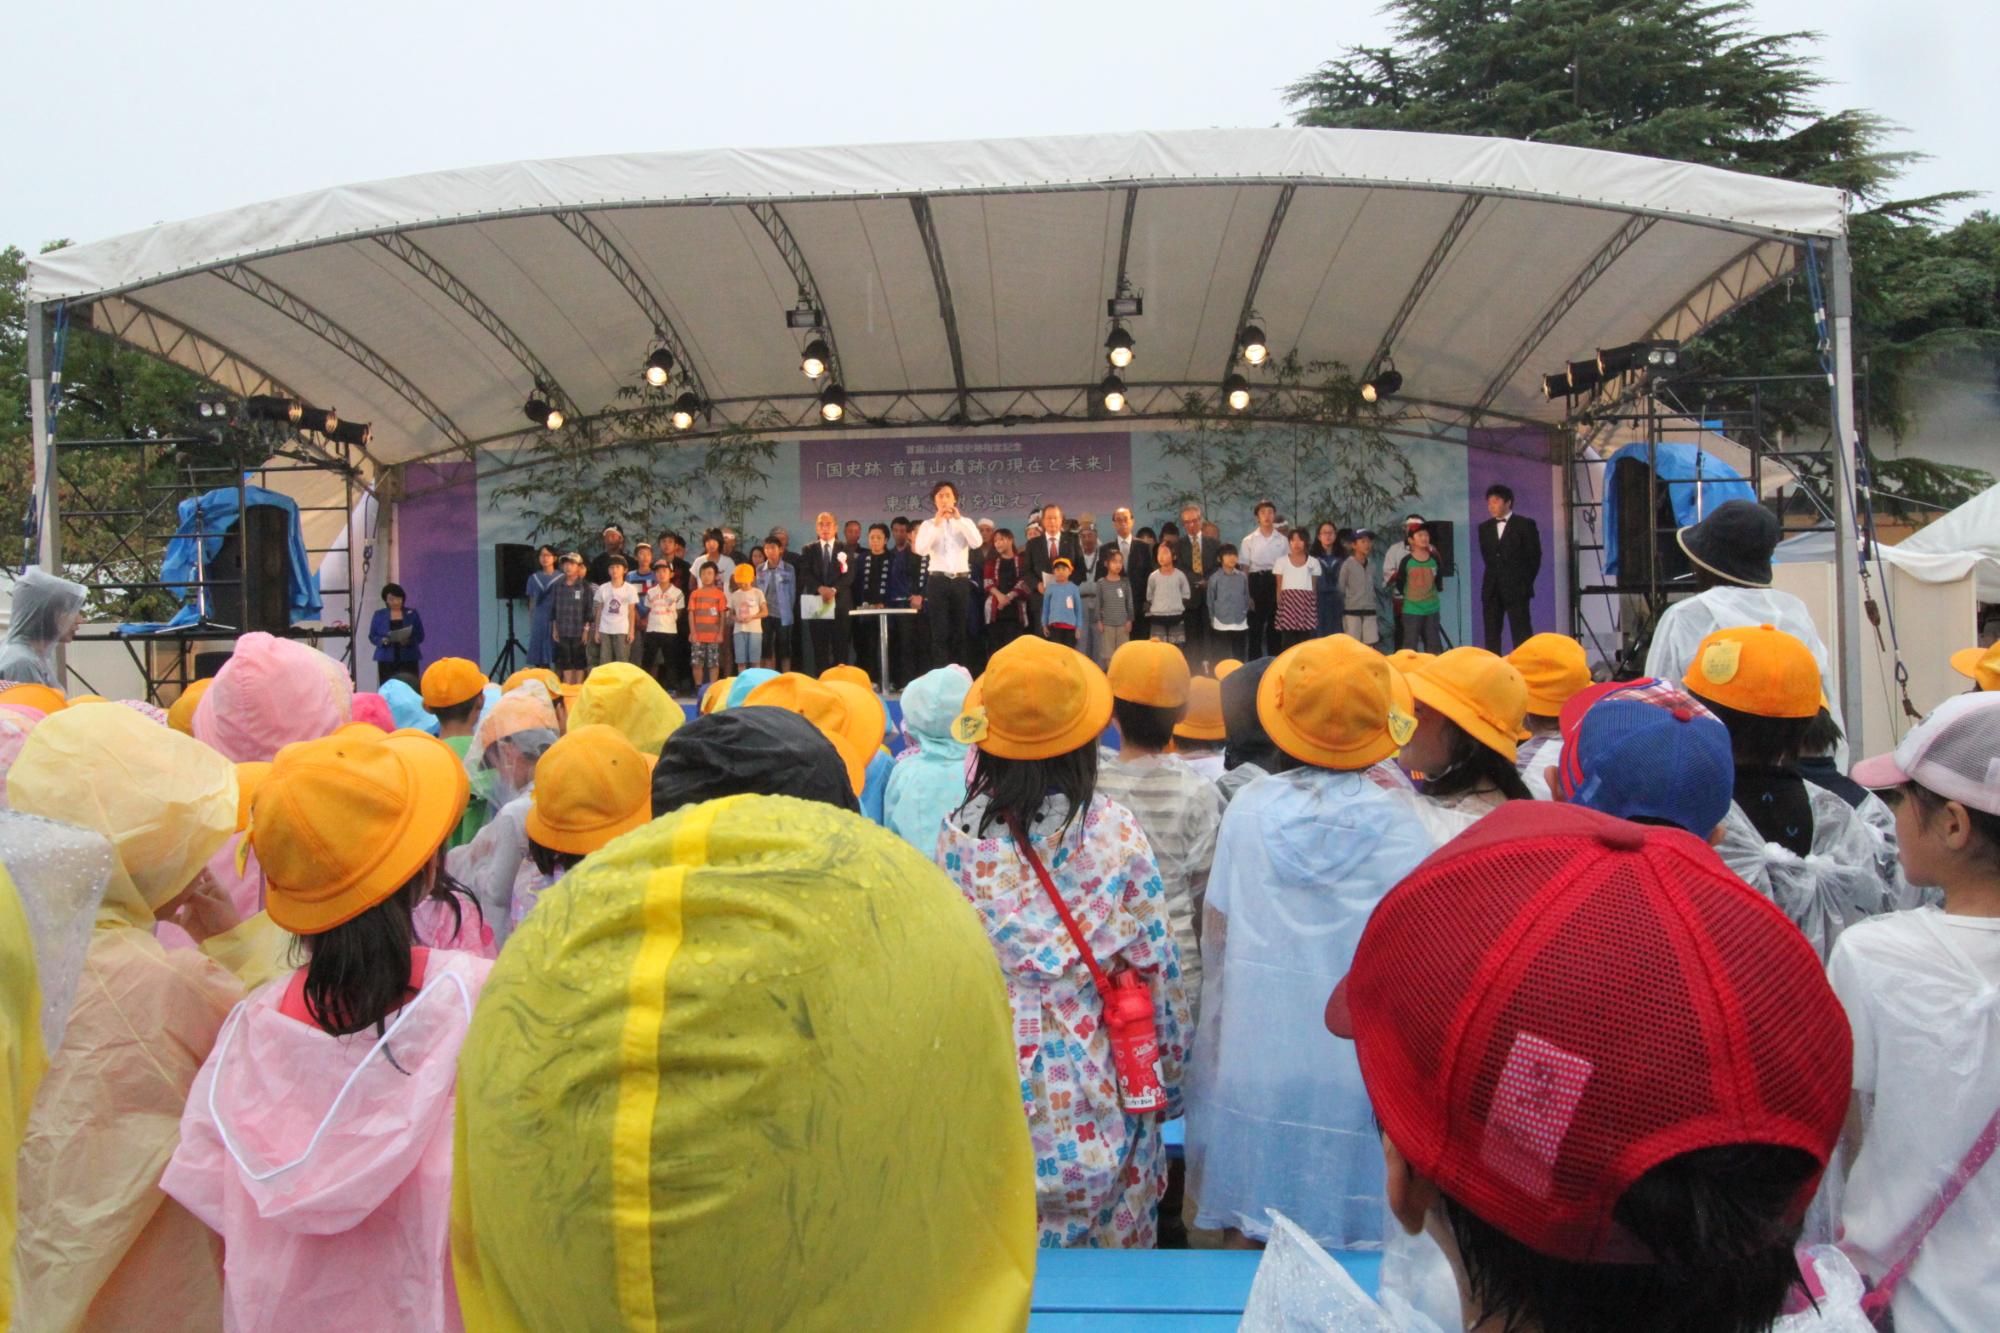 「国史跡 首羅山遺跡の現在と未来」と書かれた屋外ステージ中央で東儀秀樹さんが演奏しているのをステージ上の大人や子供たちや、ステージの下で帽子をかぶってカッパを着た子供たちがそれを見ている様子の写真